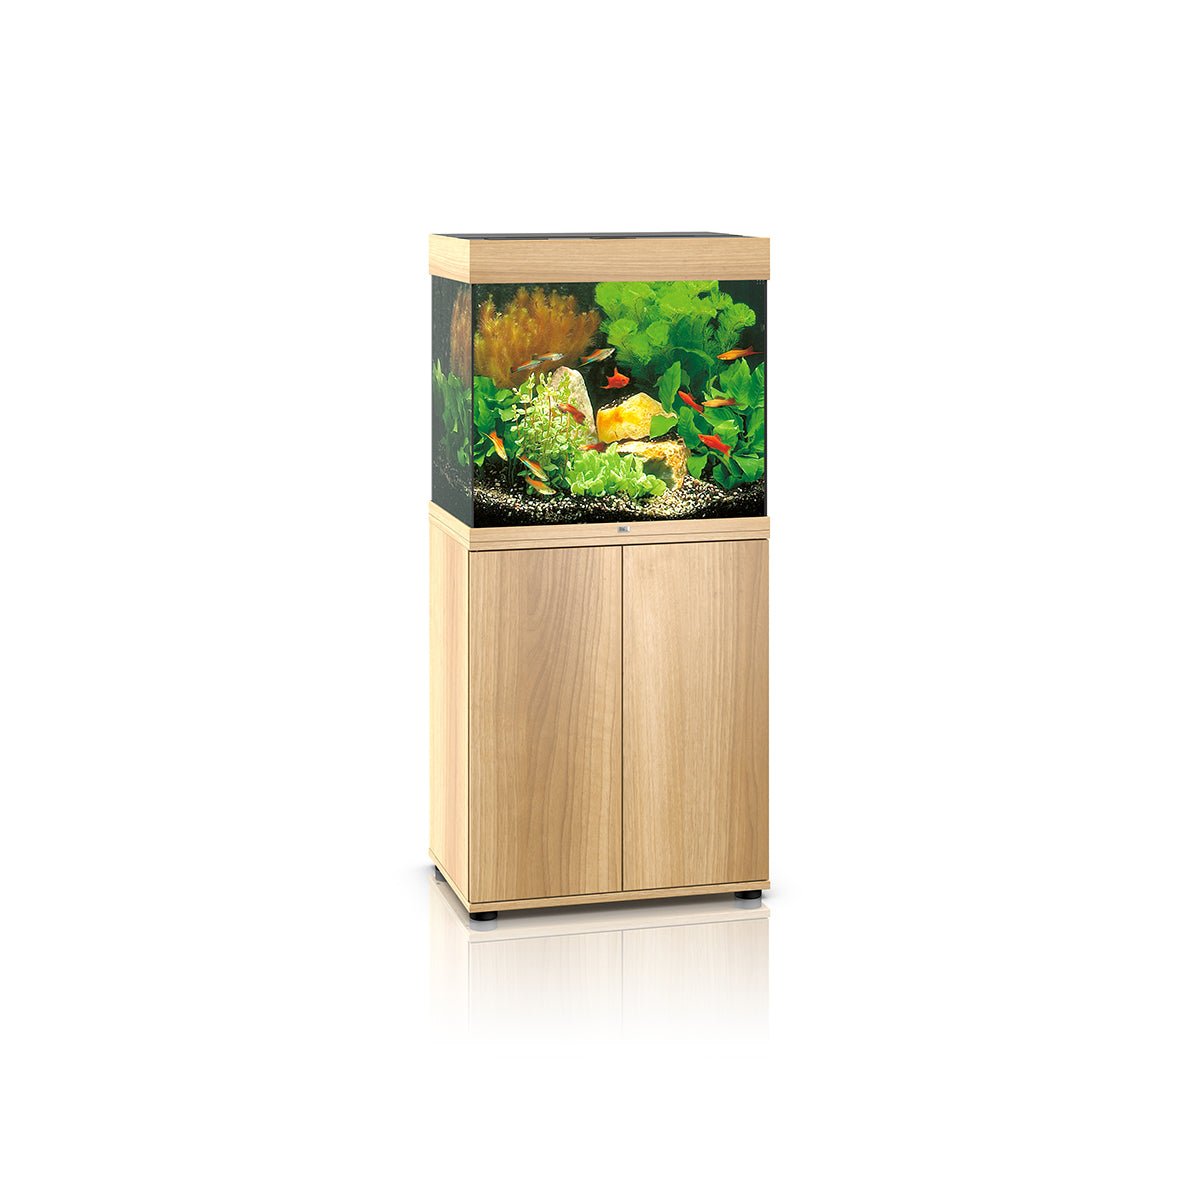 Juwel Lido 120 LED Aquarium and Cabinet (Light Wood) - Charterhouse Aquatics